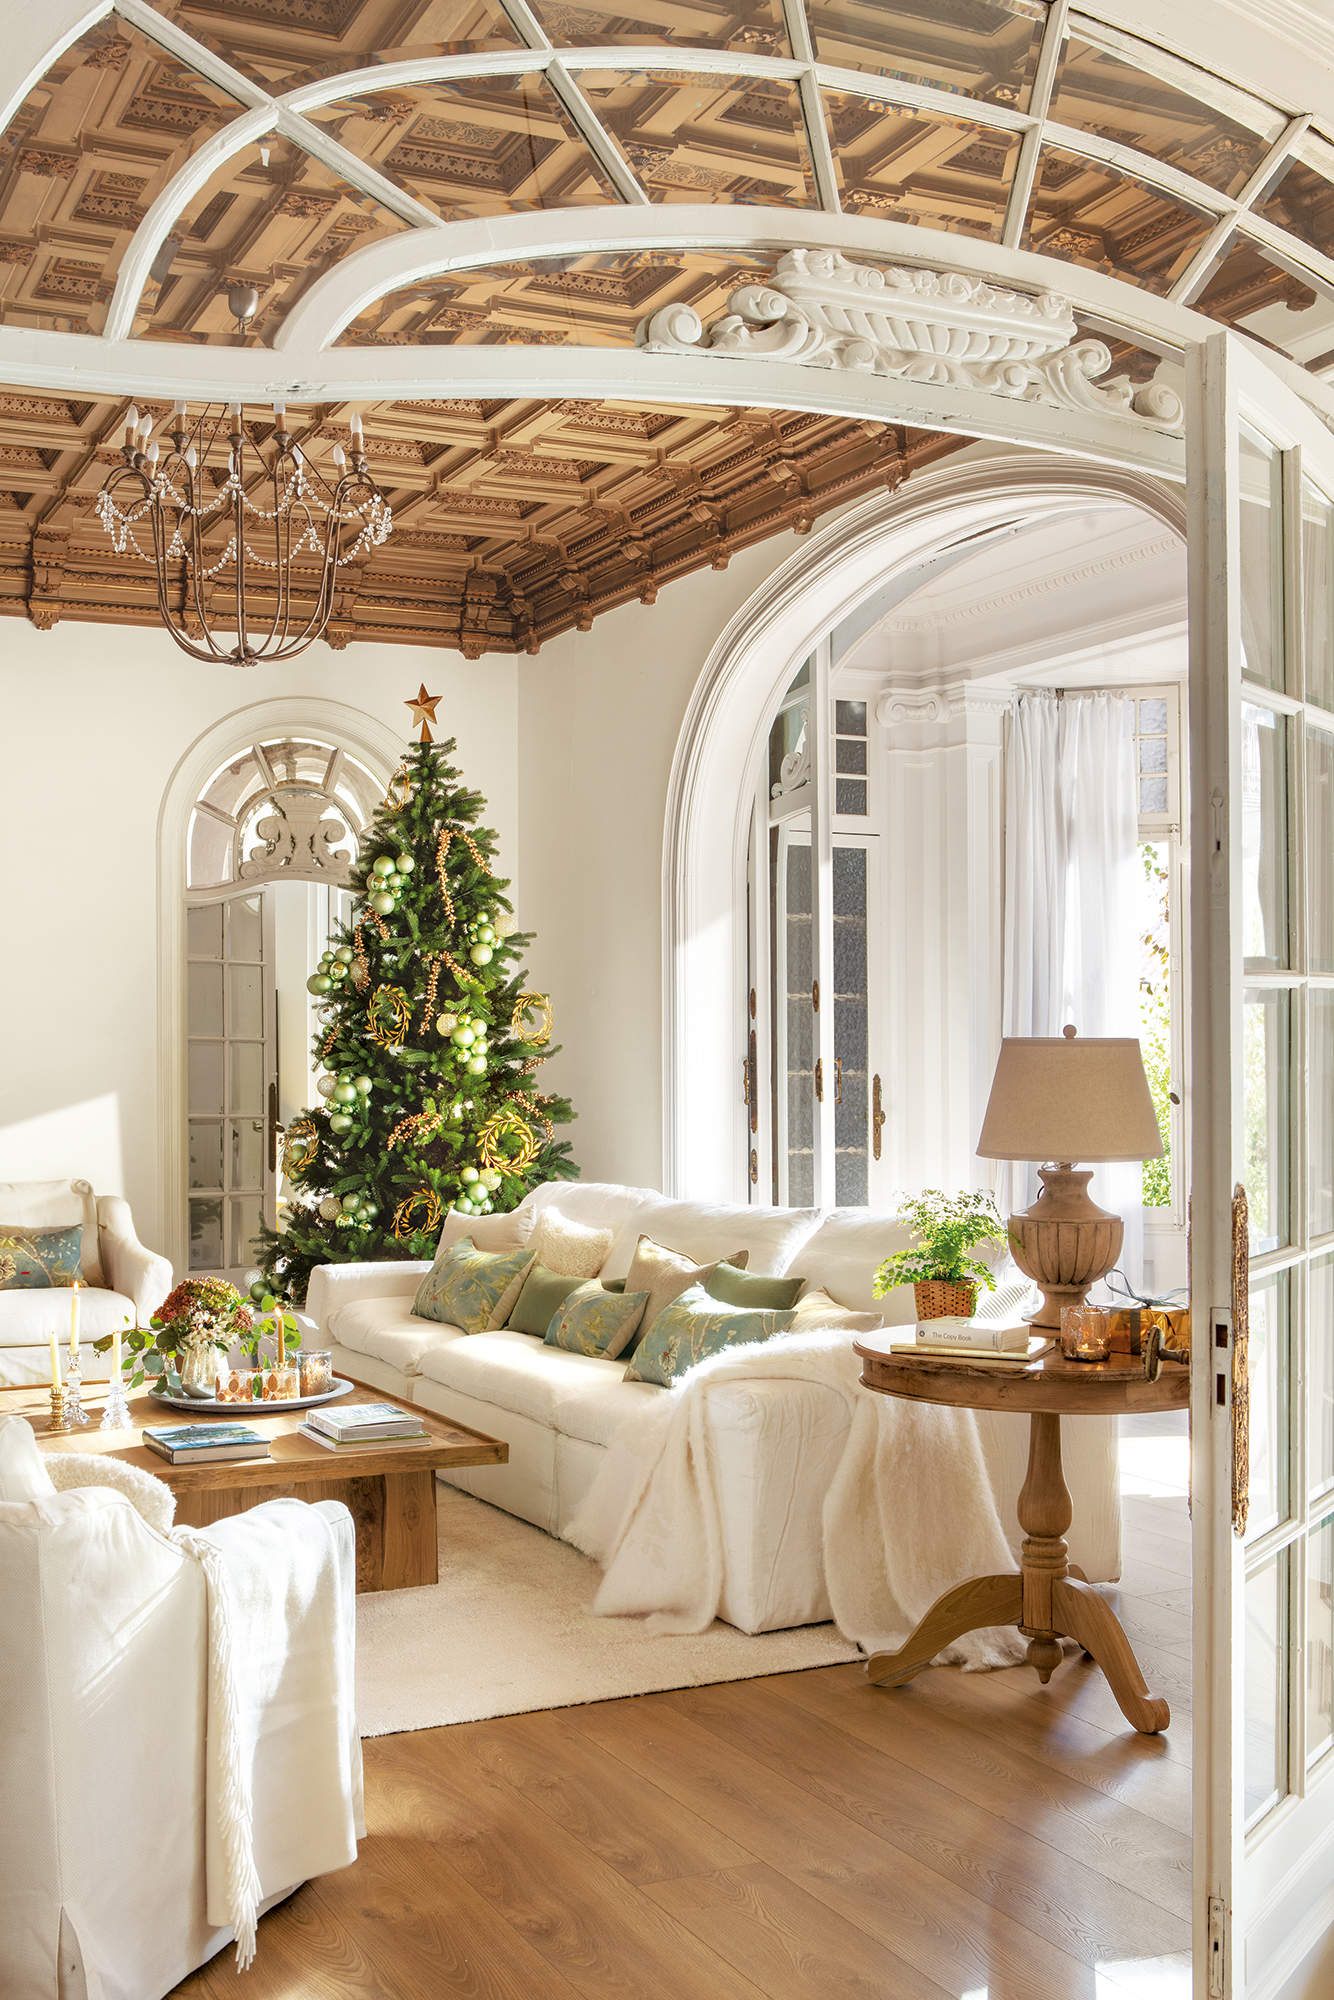 Salón elegante de Navidad con techo de molduras, puertas en arco y lámpara de araña.